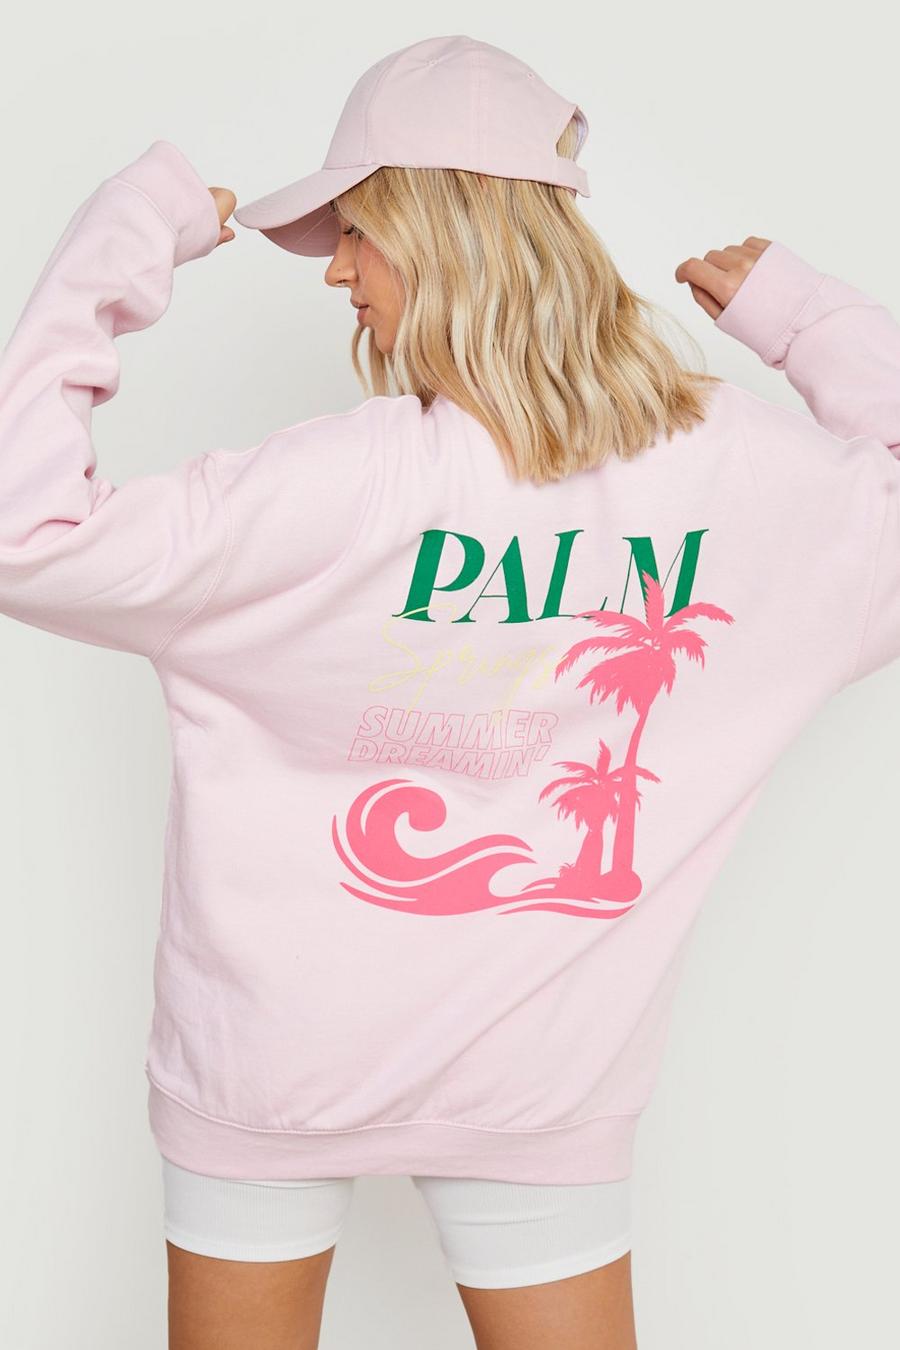 Sudadera oversize con estampado de Palm Springs en la espalda, Light pink rosa